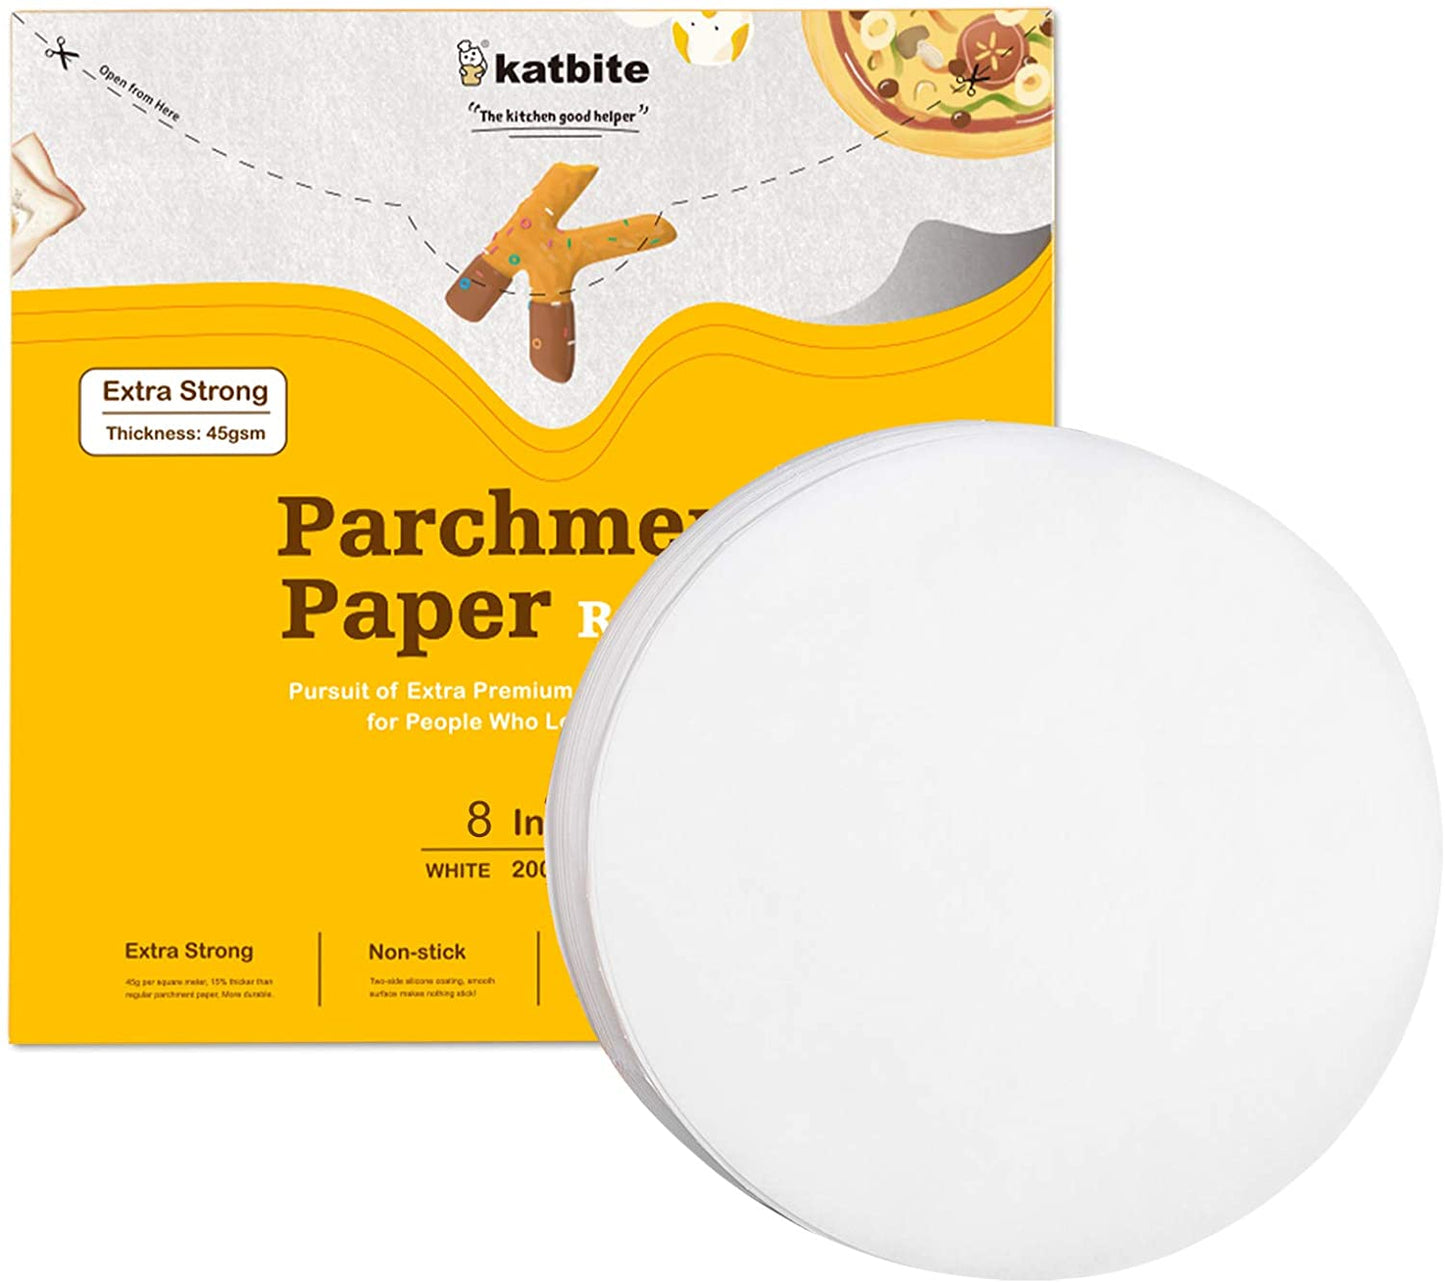 Katbite Parchment Paper Rounds - Open Box